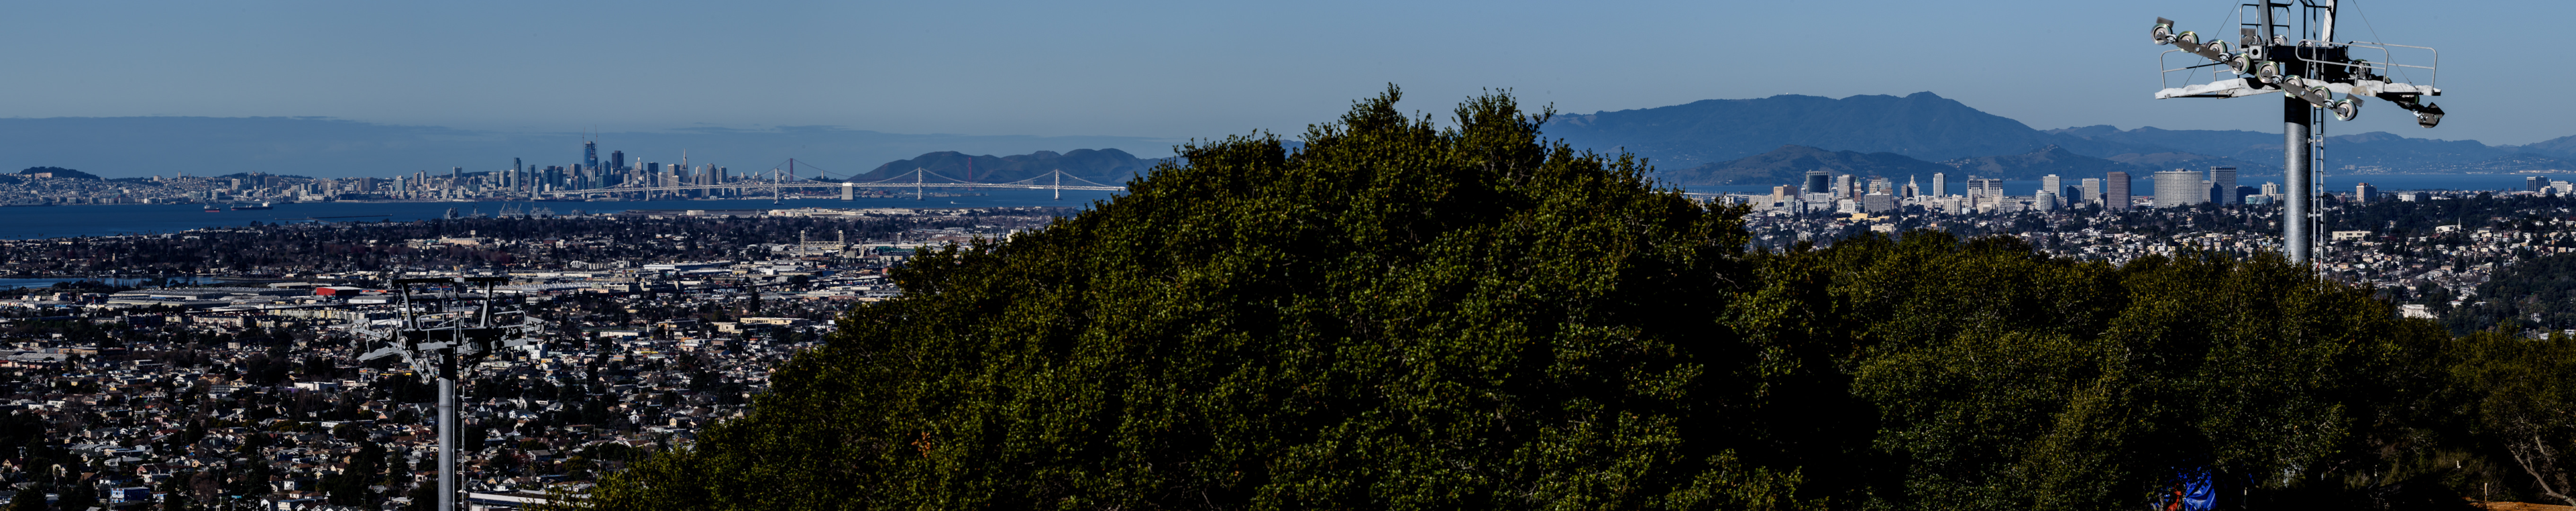 Вид с Bison Overlook на город Окленд, мост через залив и Сан-Франциско на заднем плане.